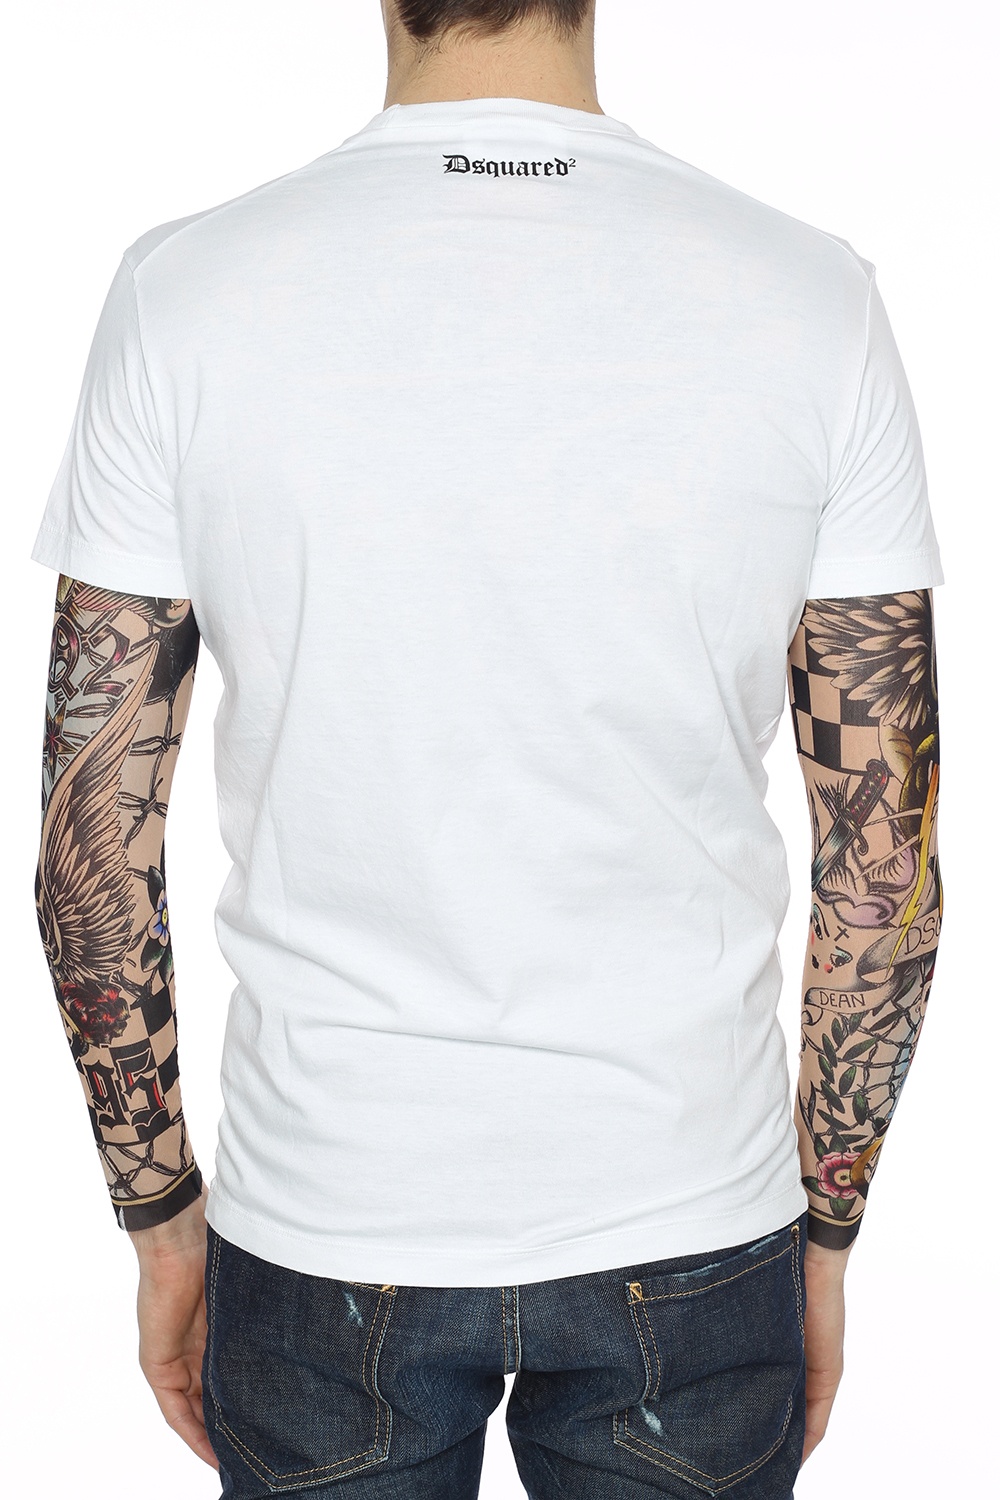 dsquared2 tattoo t shirt